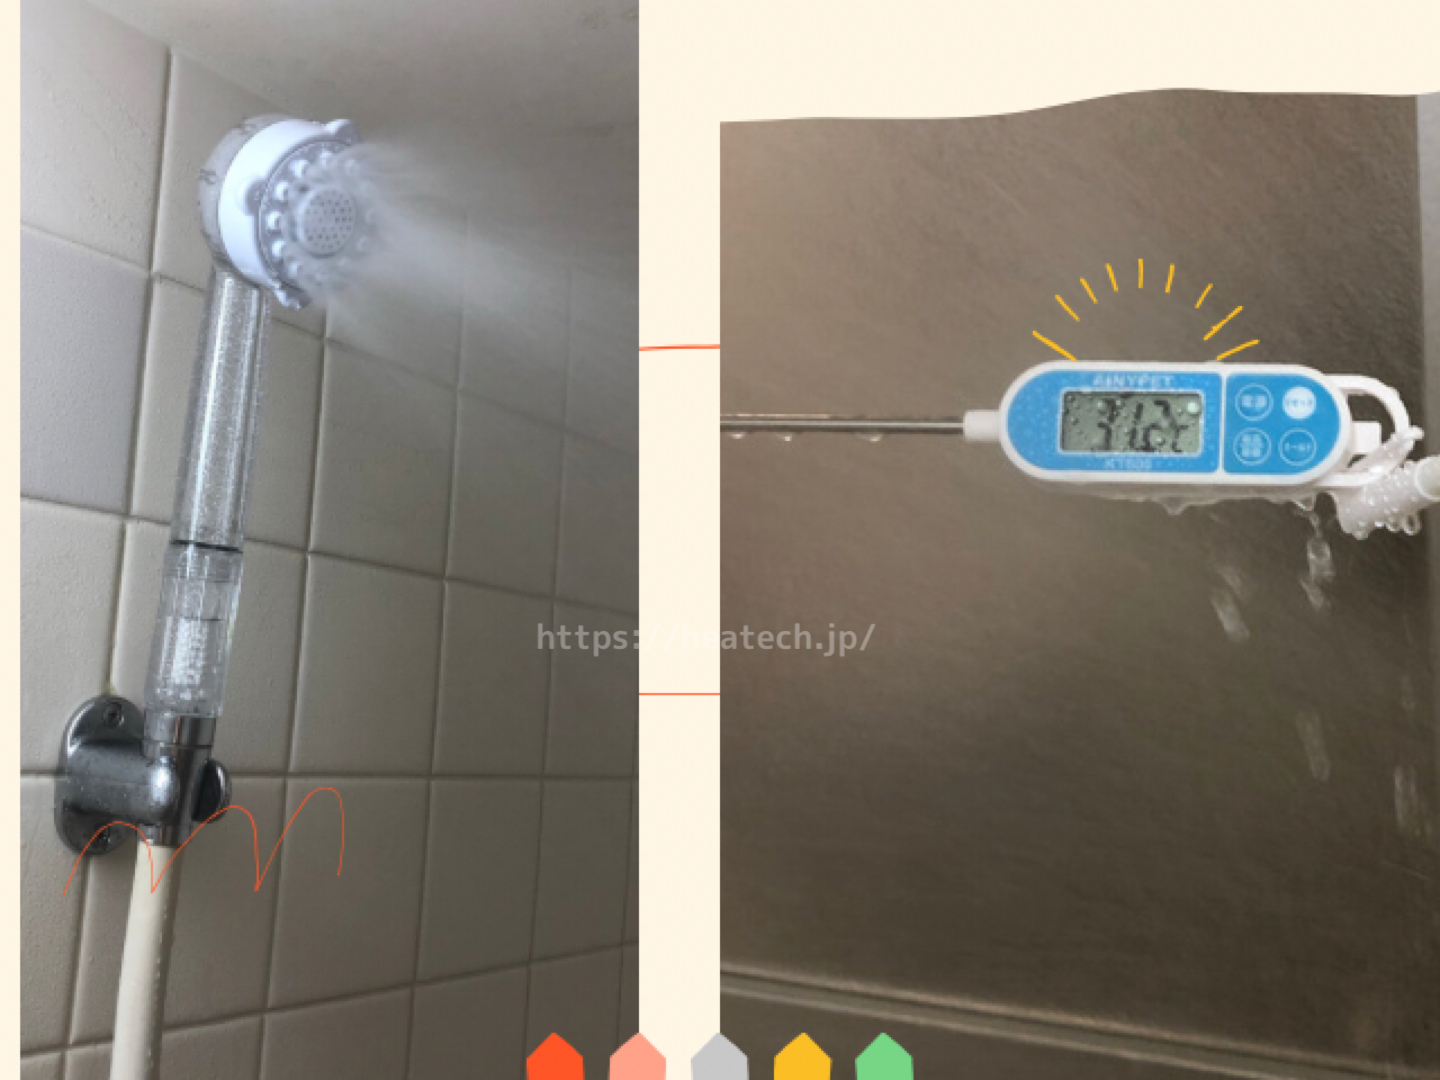 シャワーフックに掛けた時のミスト水流水温を表す画像